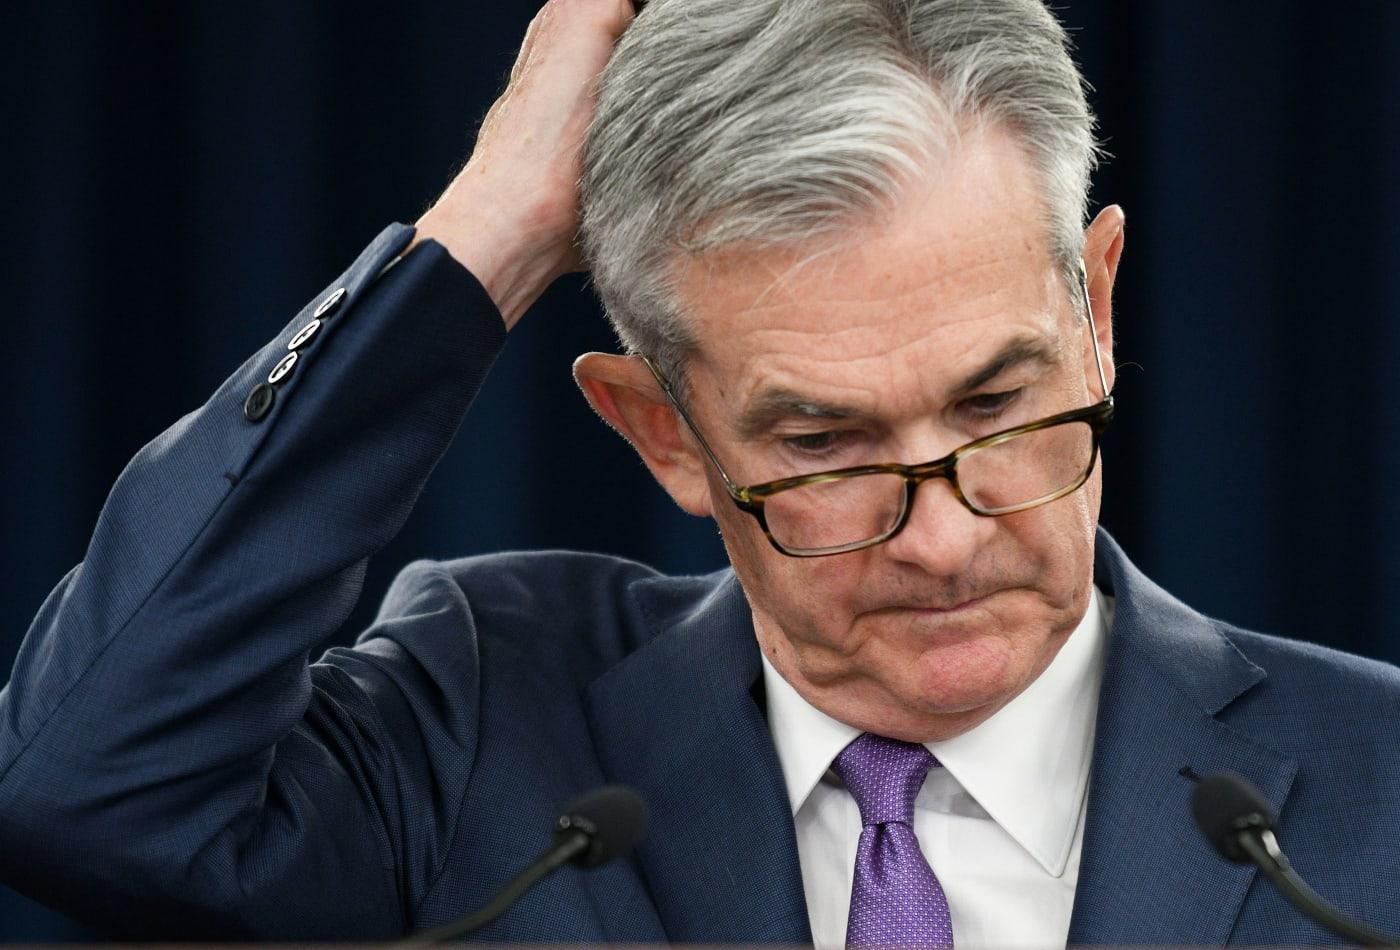 Cơn đau đầu của chủ tịch Fed Powell - khi tròn vai thôi là chưa đủ